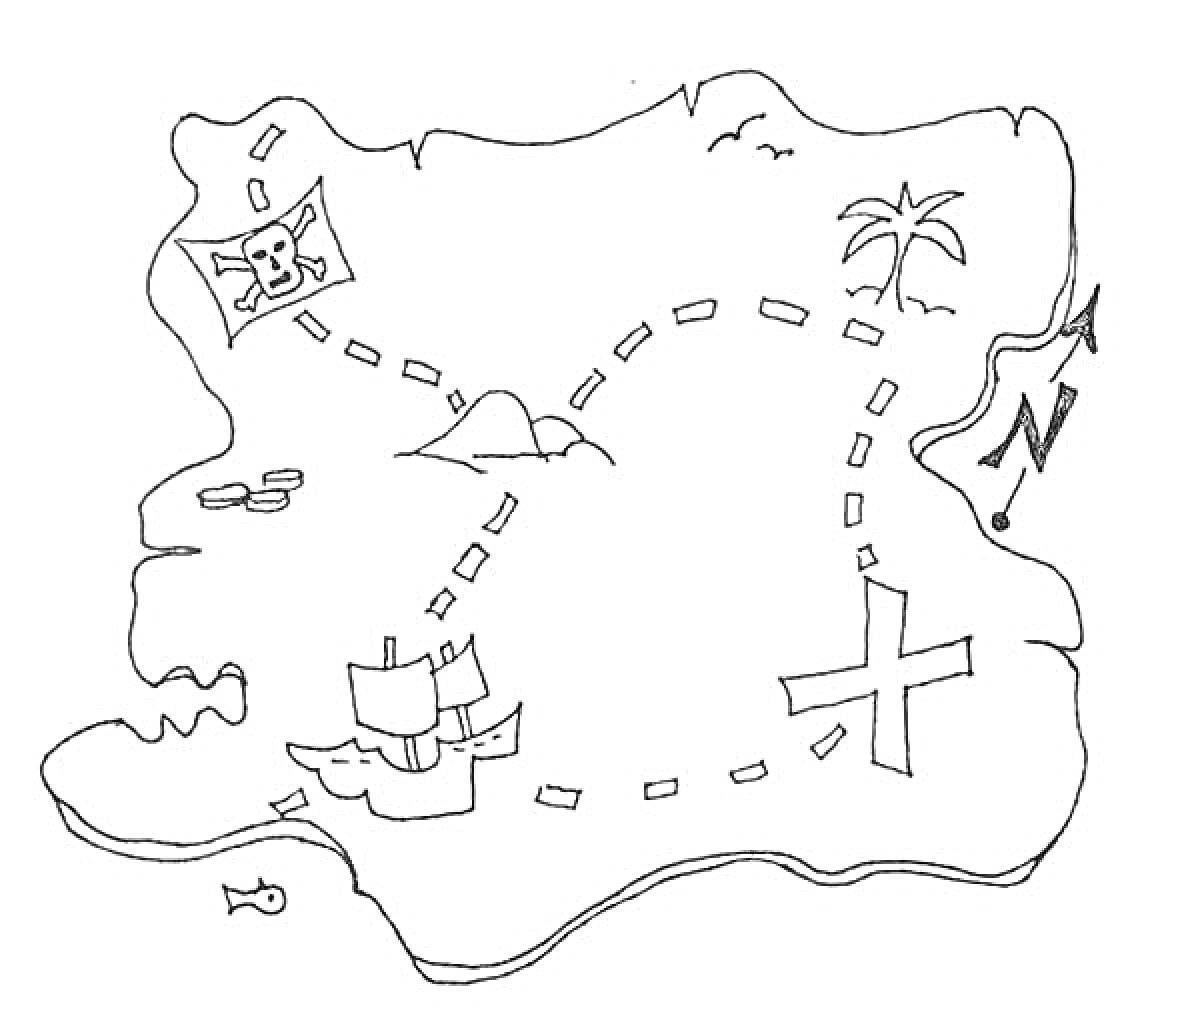 Карта сокровищ с пиратским флагом, пальмой, кораблем, крестом и компасом